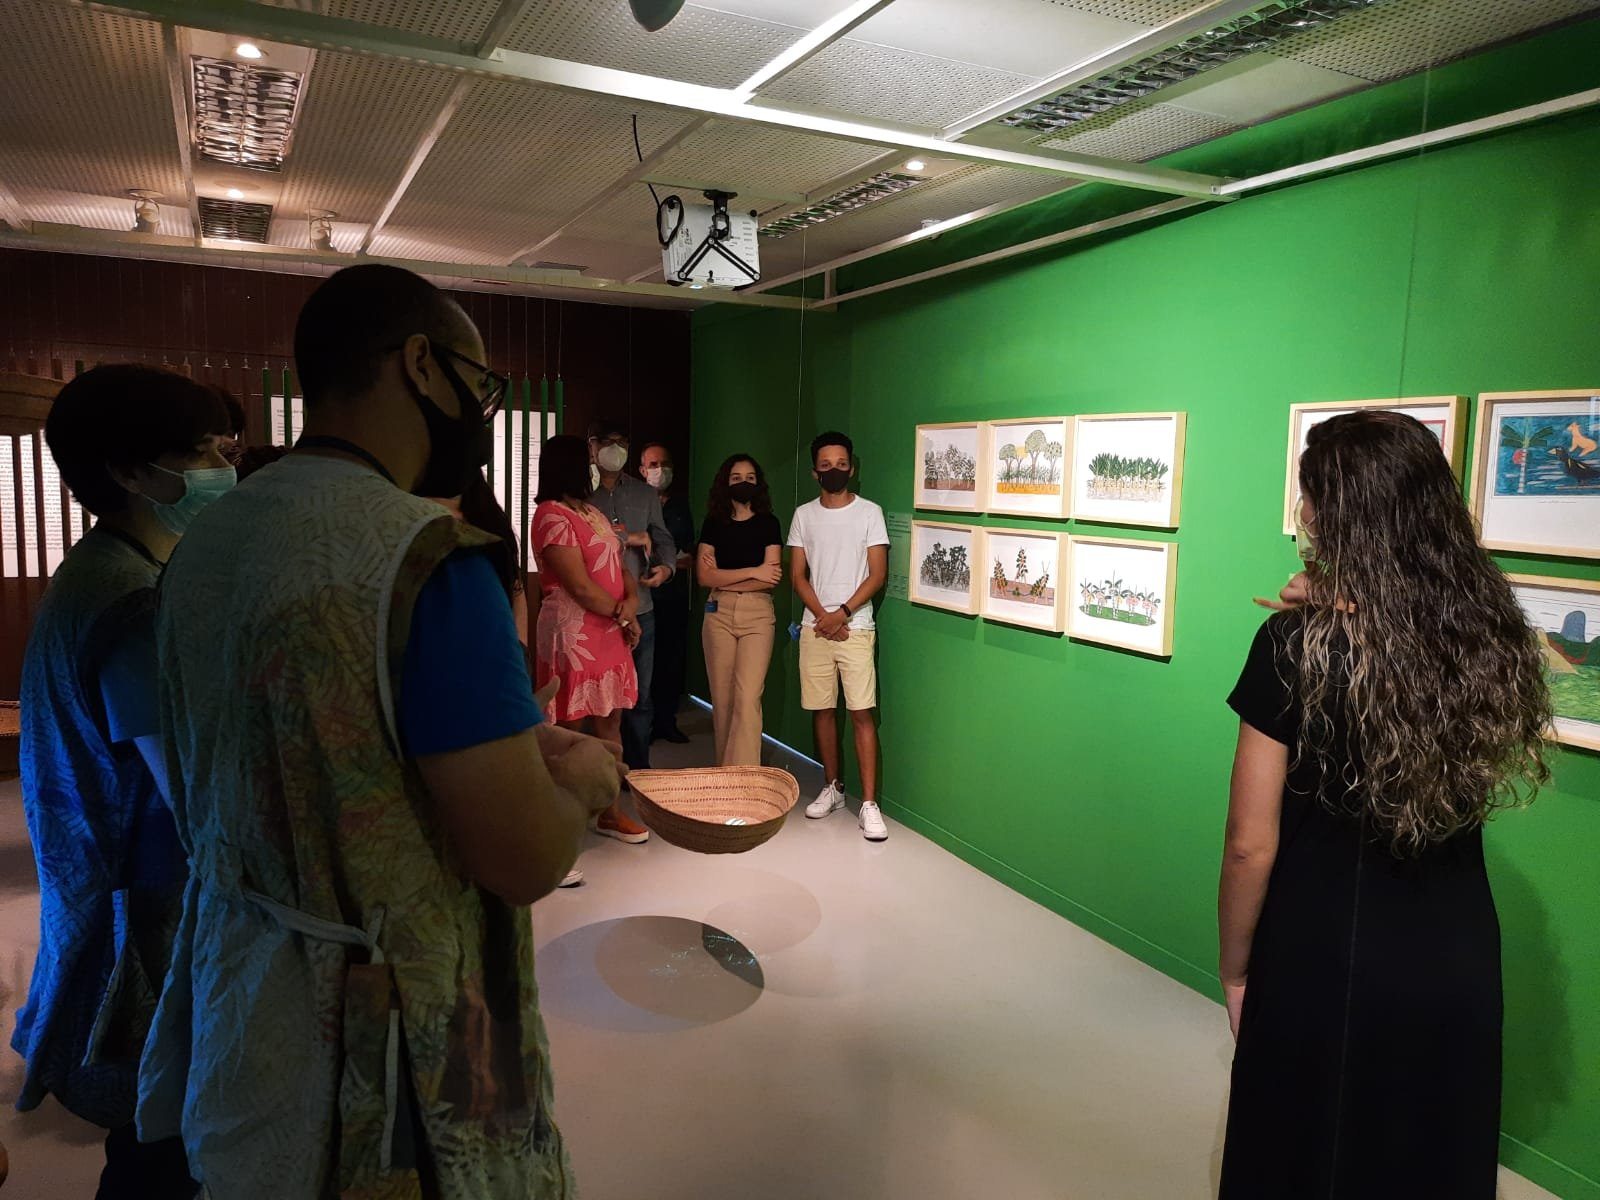 Sábado com Libras: Espaço do Conhecimento UFMG promove oficina sobre a comunicação com surdos nos museus